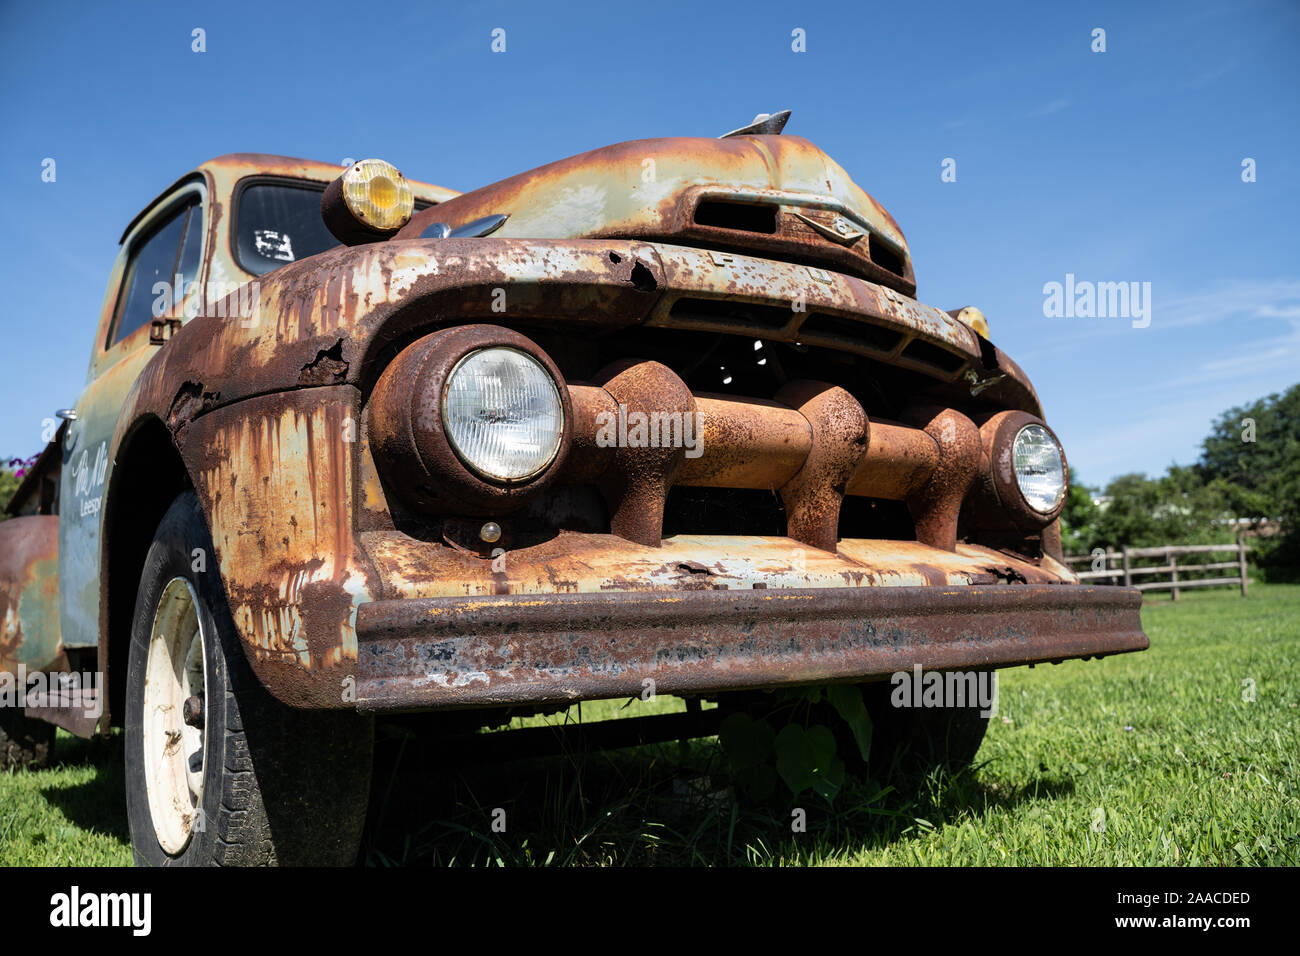 Vieux camion Ford, fond de ciel bleu, 10 août 2019, Leesport, New York, USA Banque D'Images